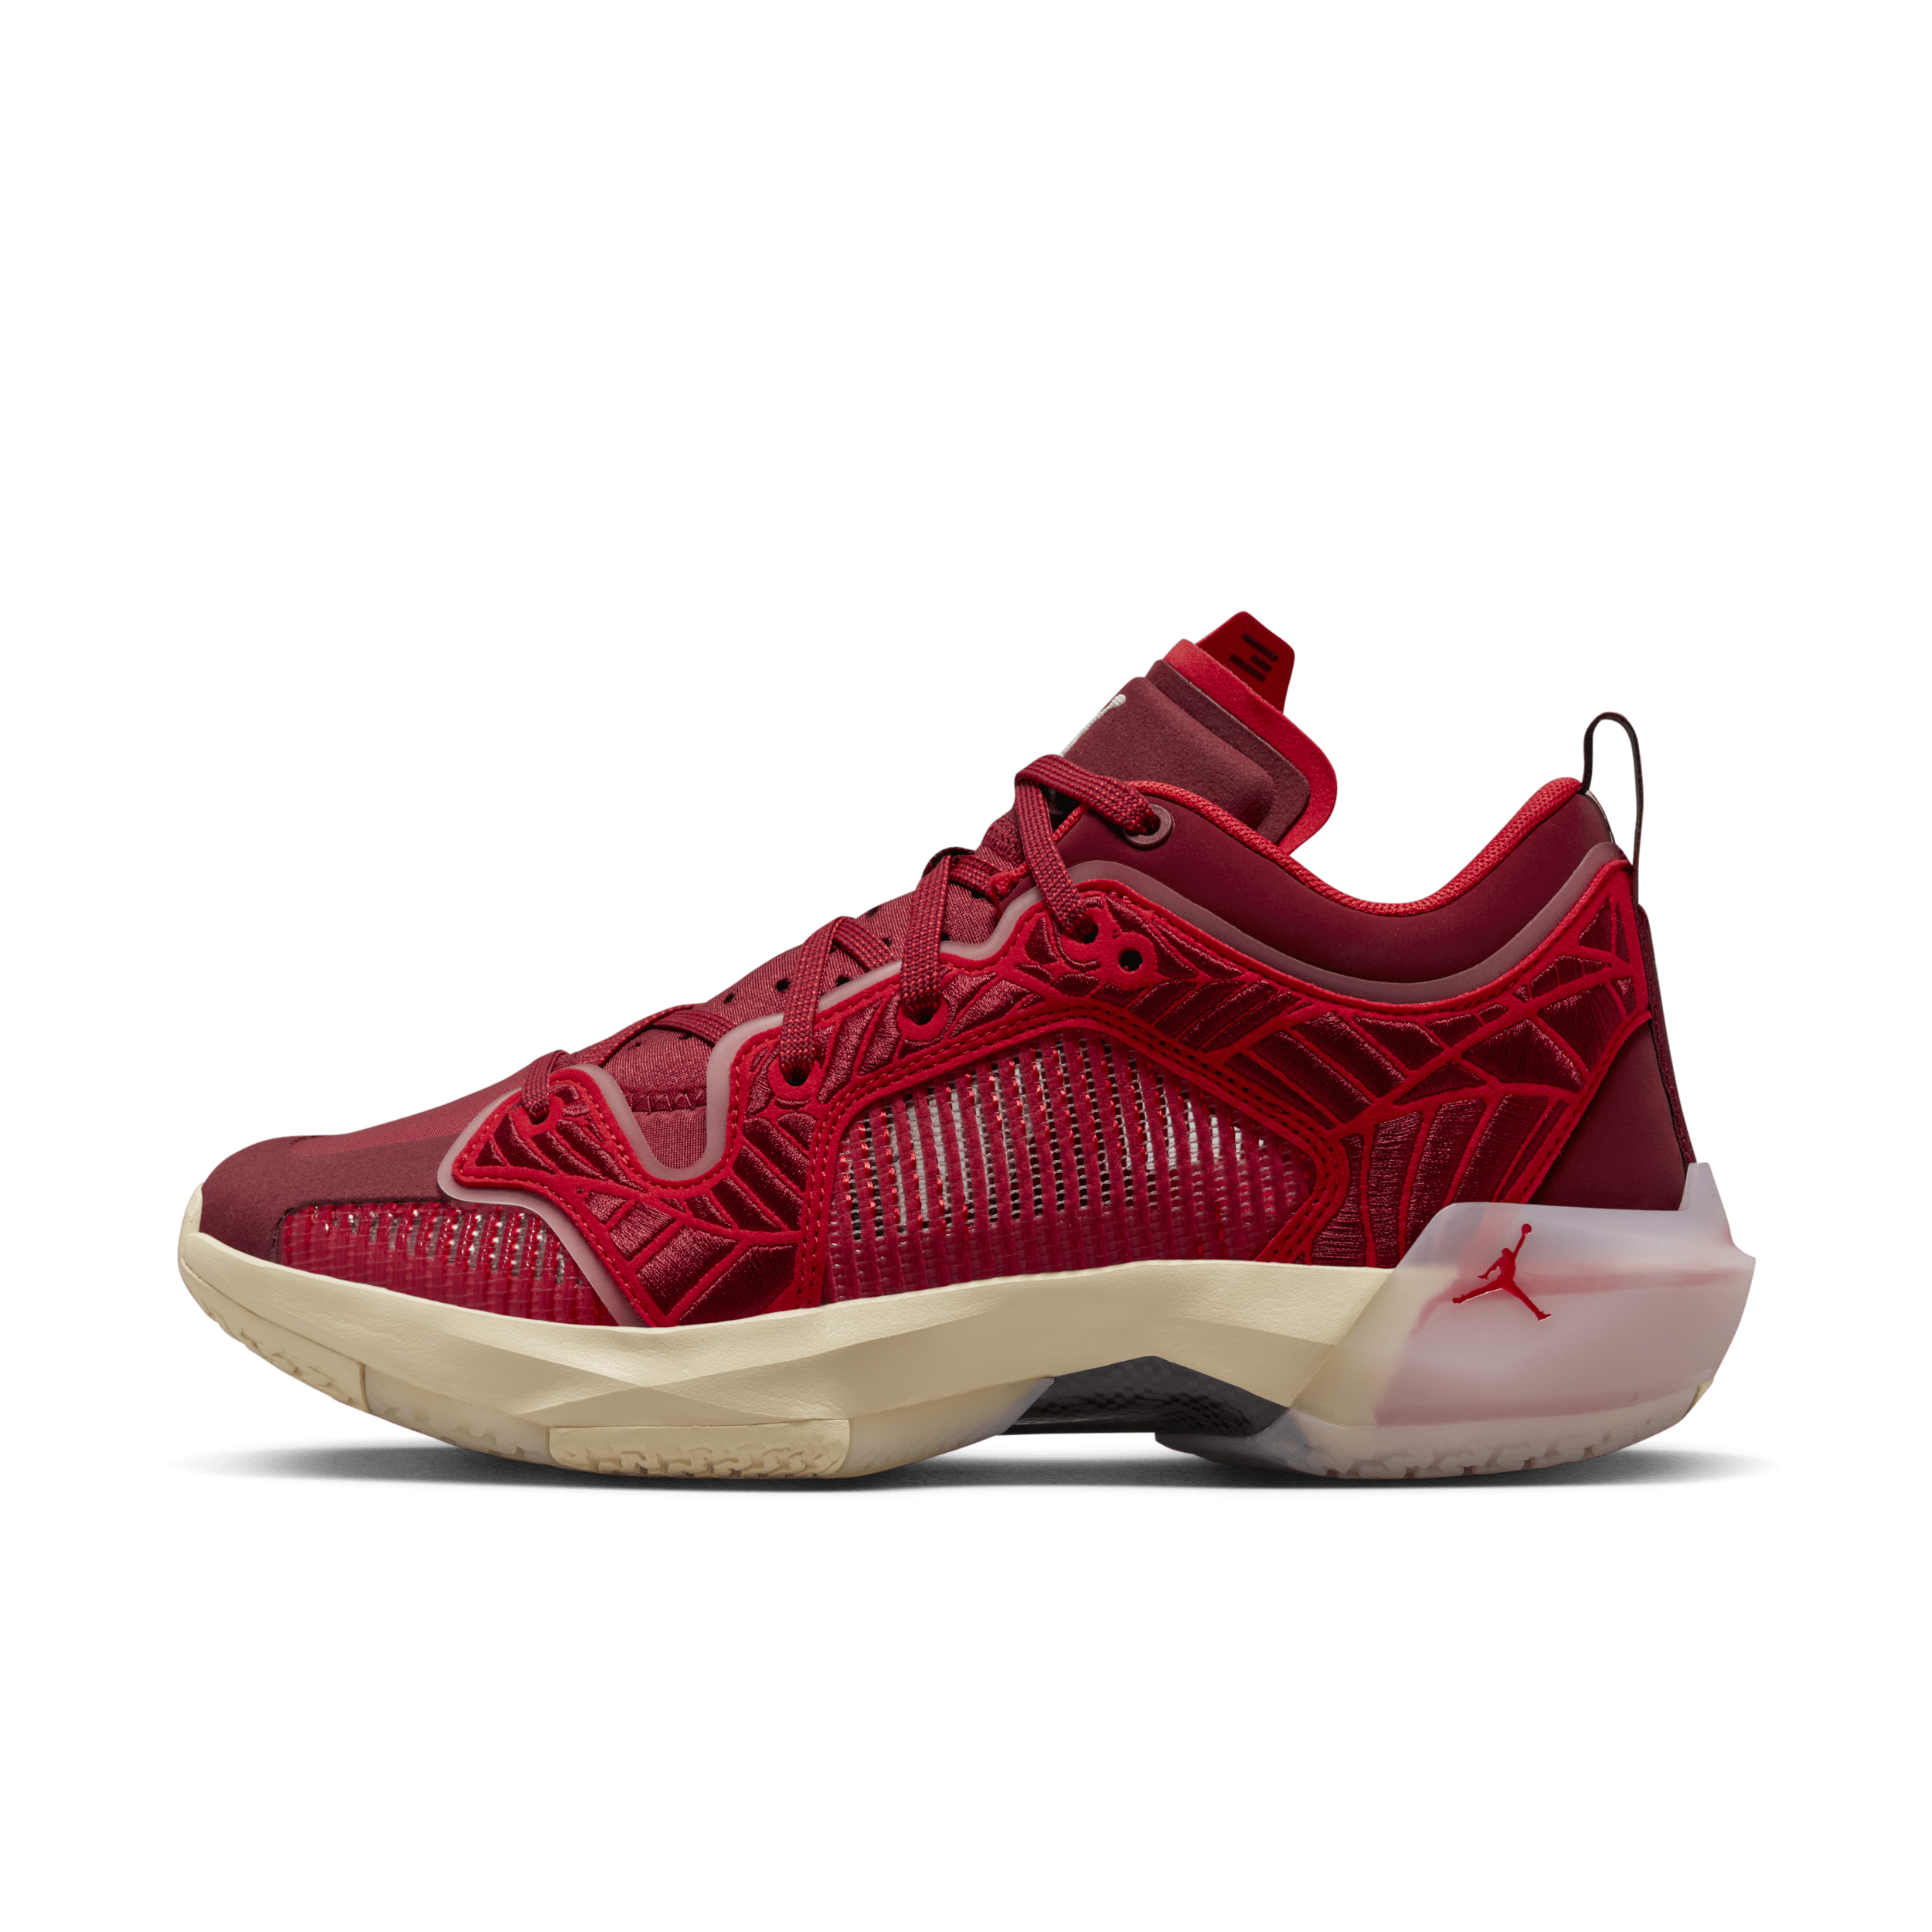 Air Jordan XXXVII Low Basketbalschoenen voor dames - Rood